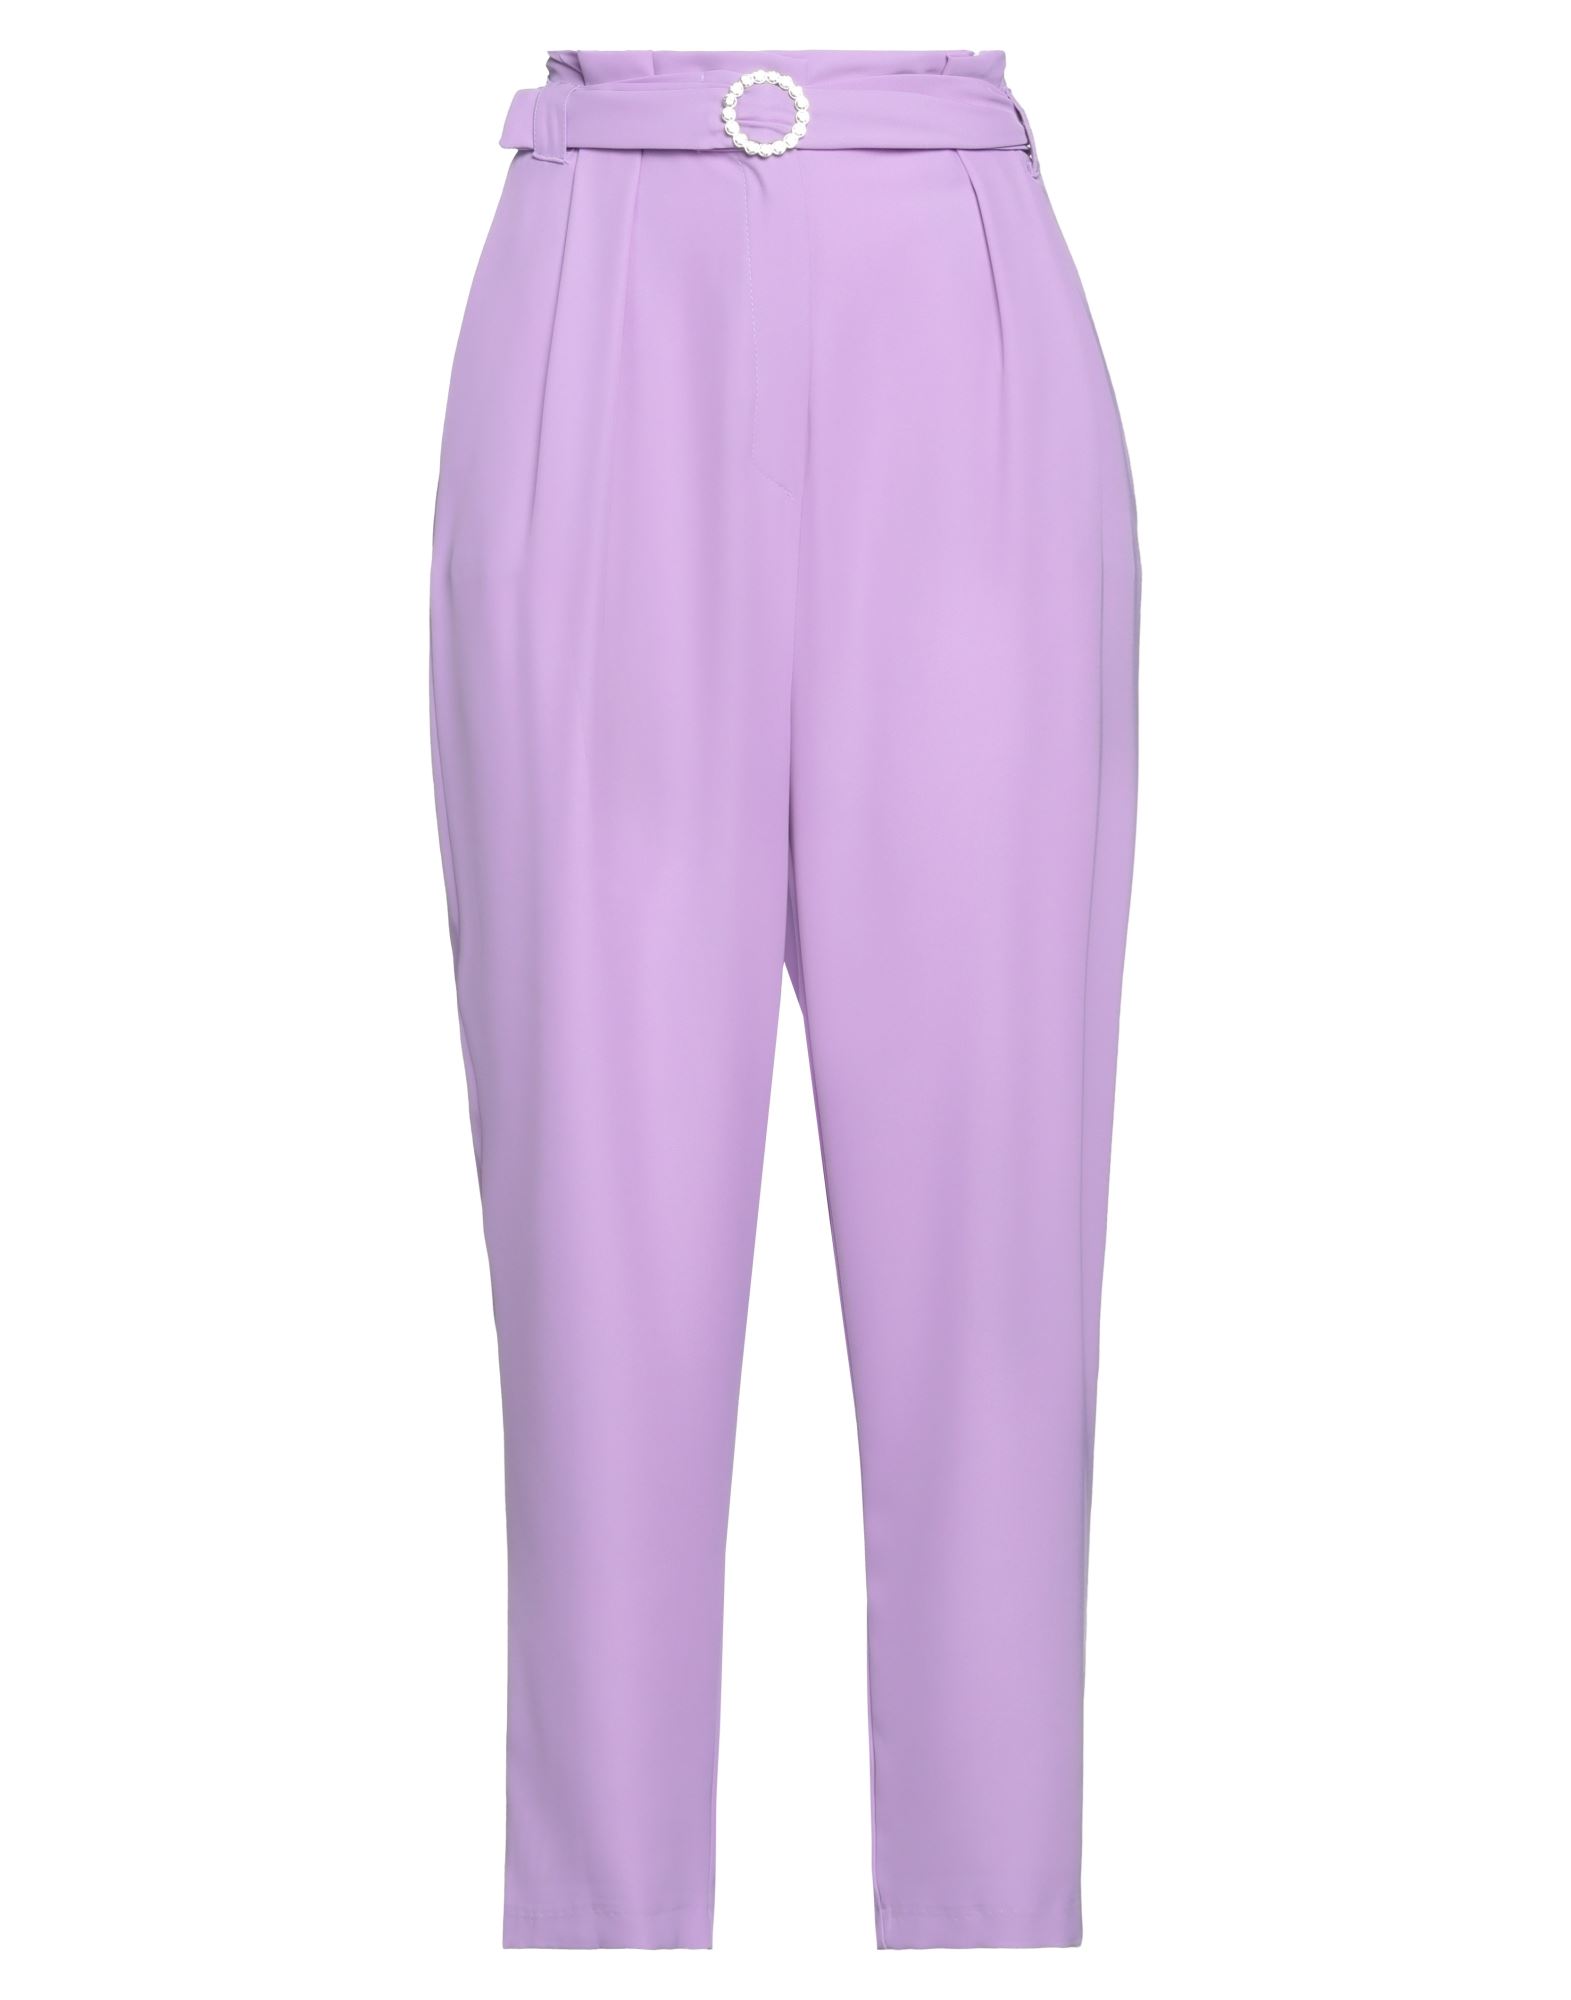 Shop Twenty Easy By Kaos Woman Pants Light Purple Size 4 Polyester, Elastane